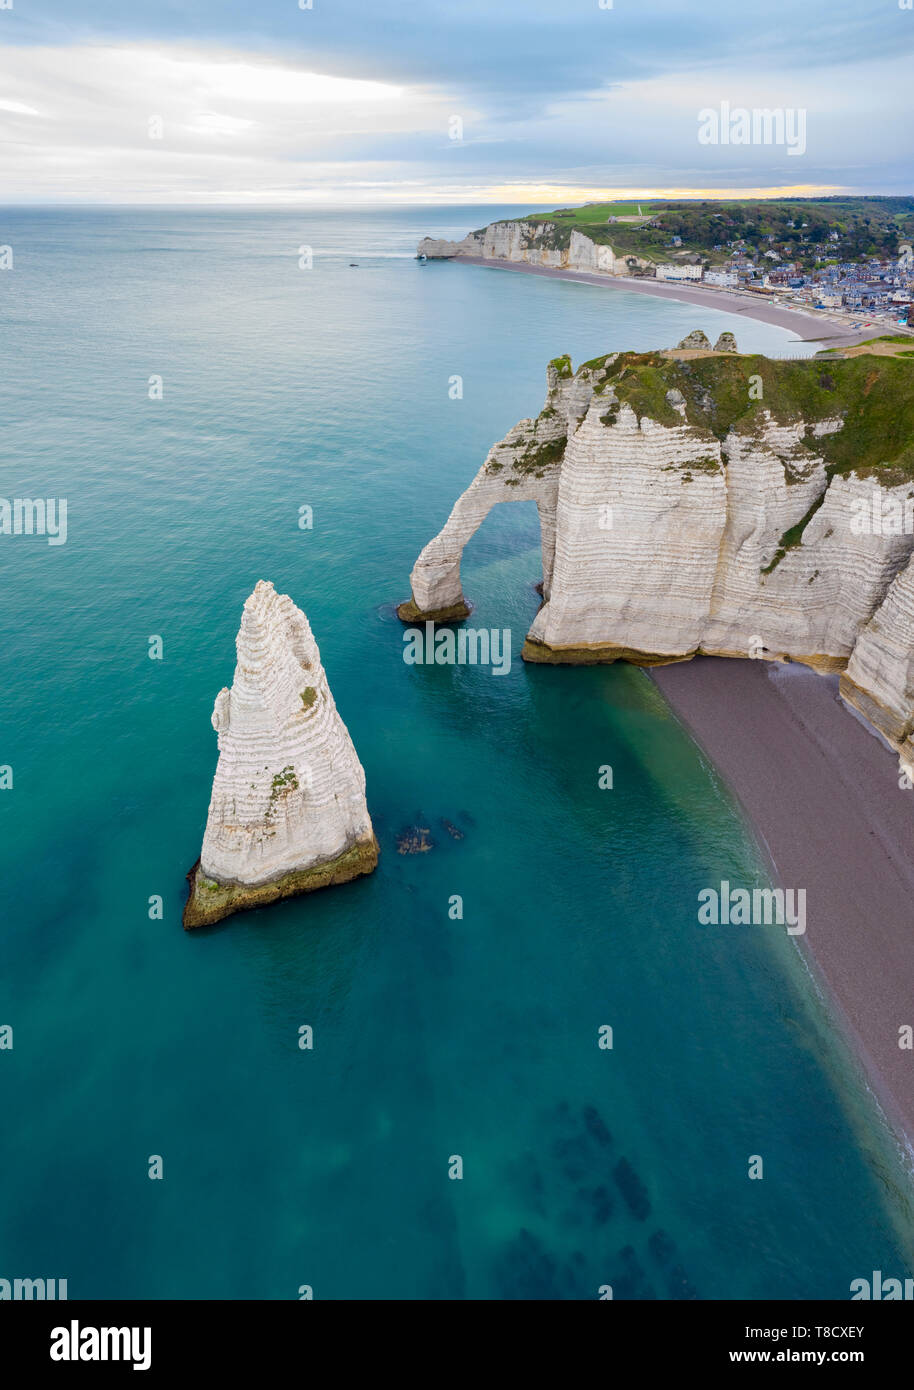 Vista aerea delle Scogliere di Etretat, Octeville sur Mer, Le Havre, Seine Maritime, in Normandia, Francia, Europa occidentale. Foto Stock